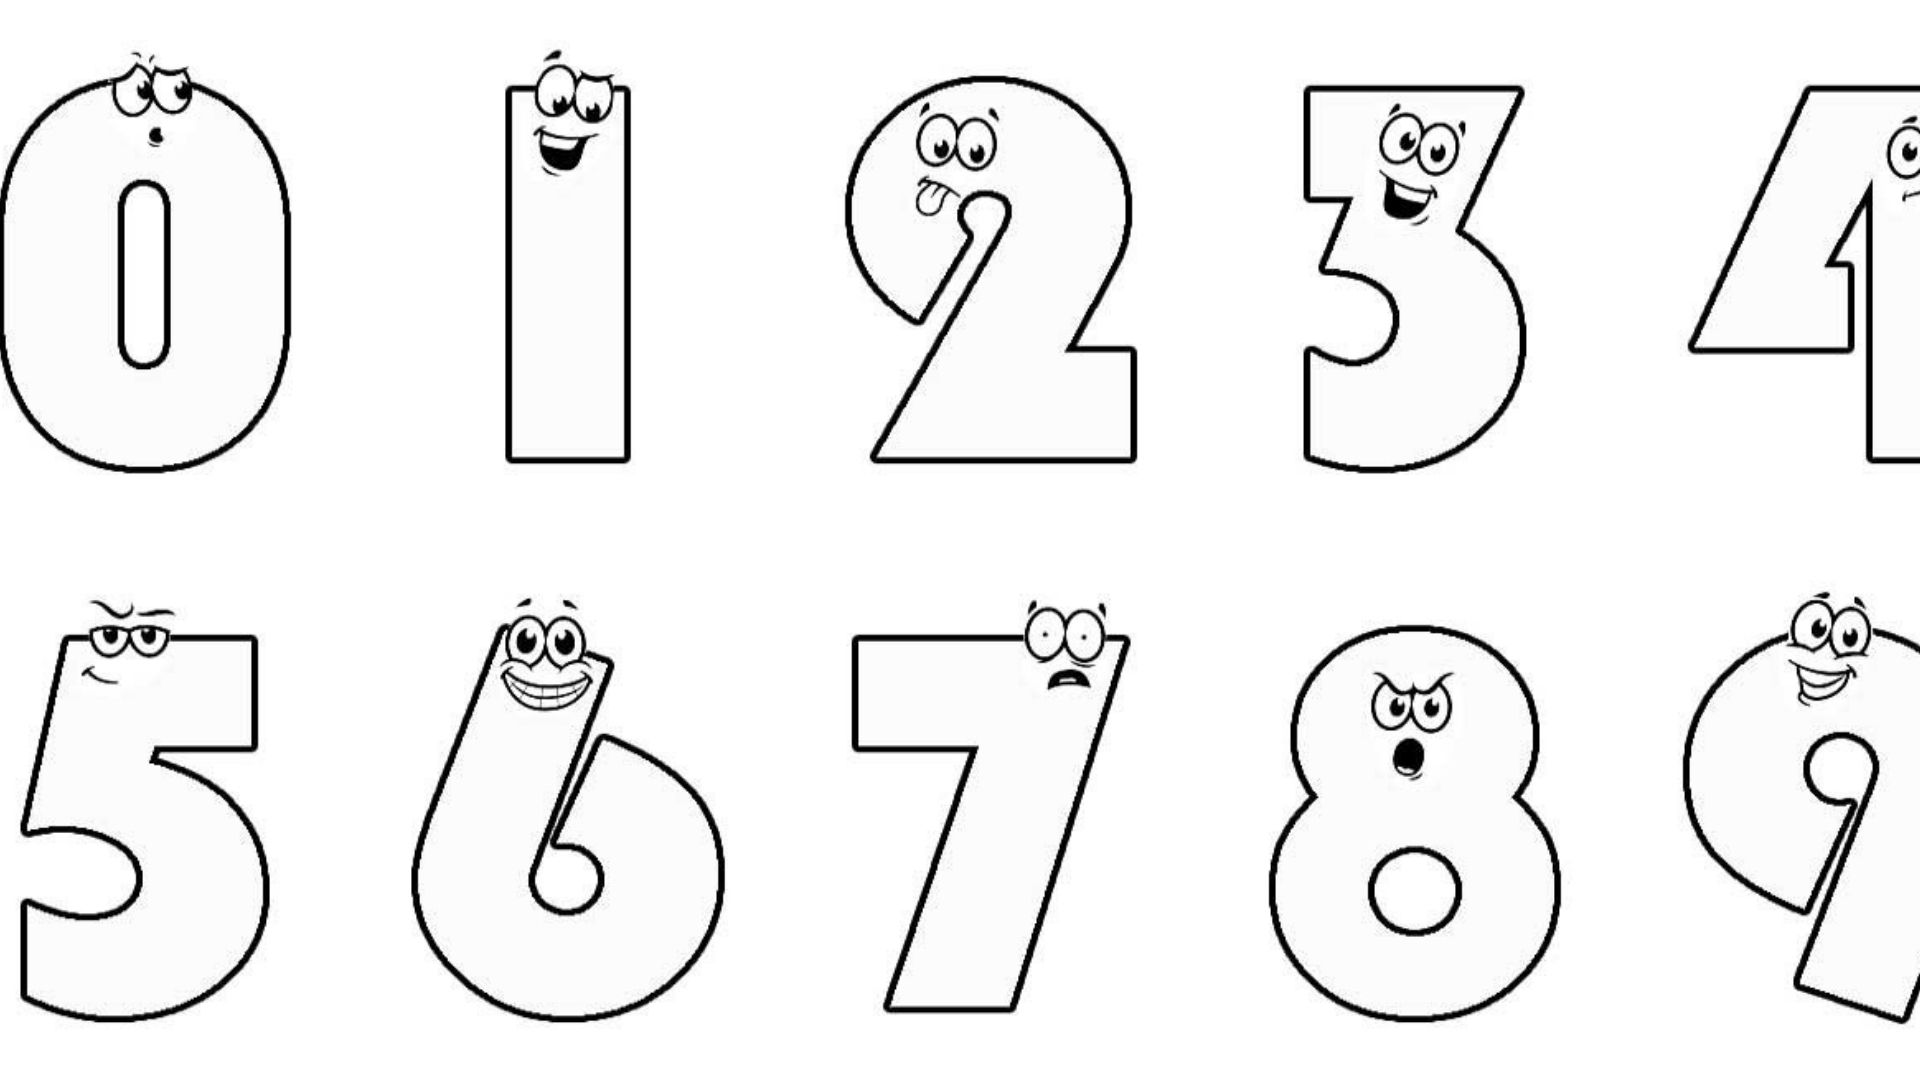 9 картинка раскраска. Раскраска цифры. Цифры для раскрашивания для детей. Цифры раскраска для детей. Цифра 1 раскраска для детей.